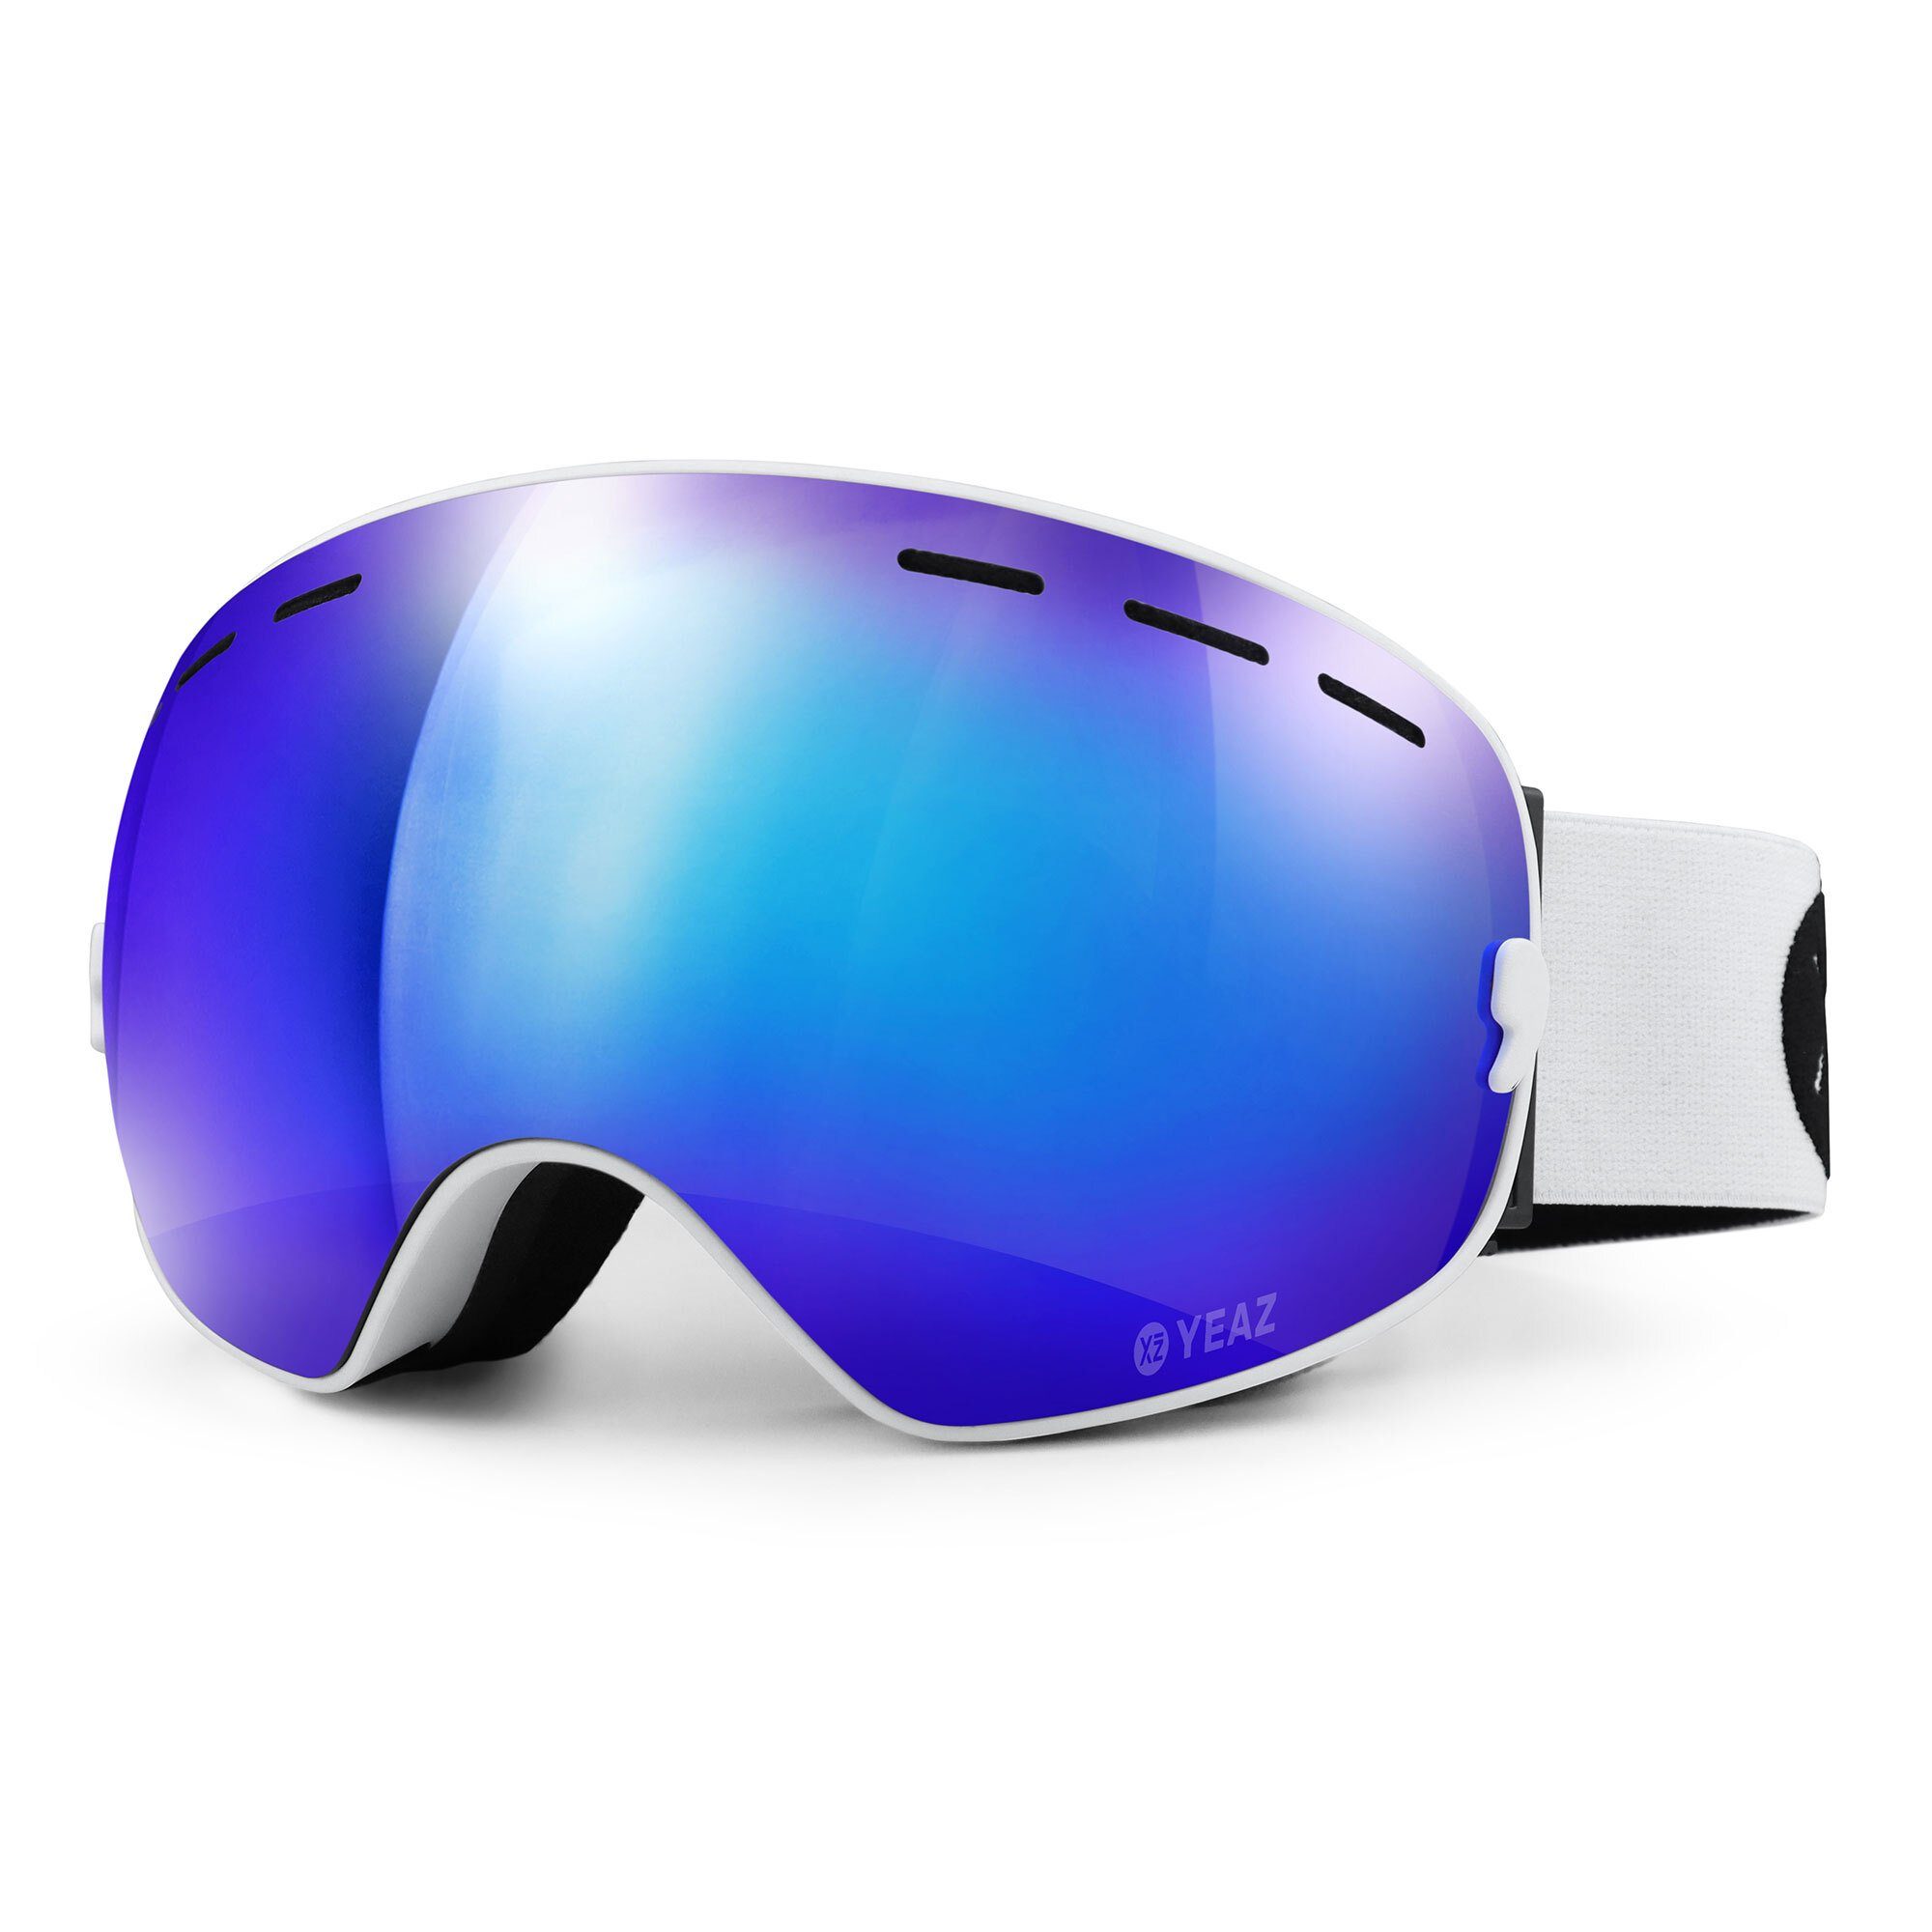 YEAZ Skibrille XTRM-SUMMIT ski- snowboardbrille verspiegelt, Premium-Ski-  und Snowboardbrille für Erwachsene und Jugendliche | Brillen